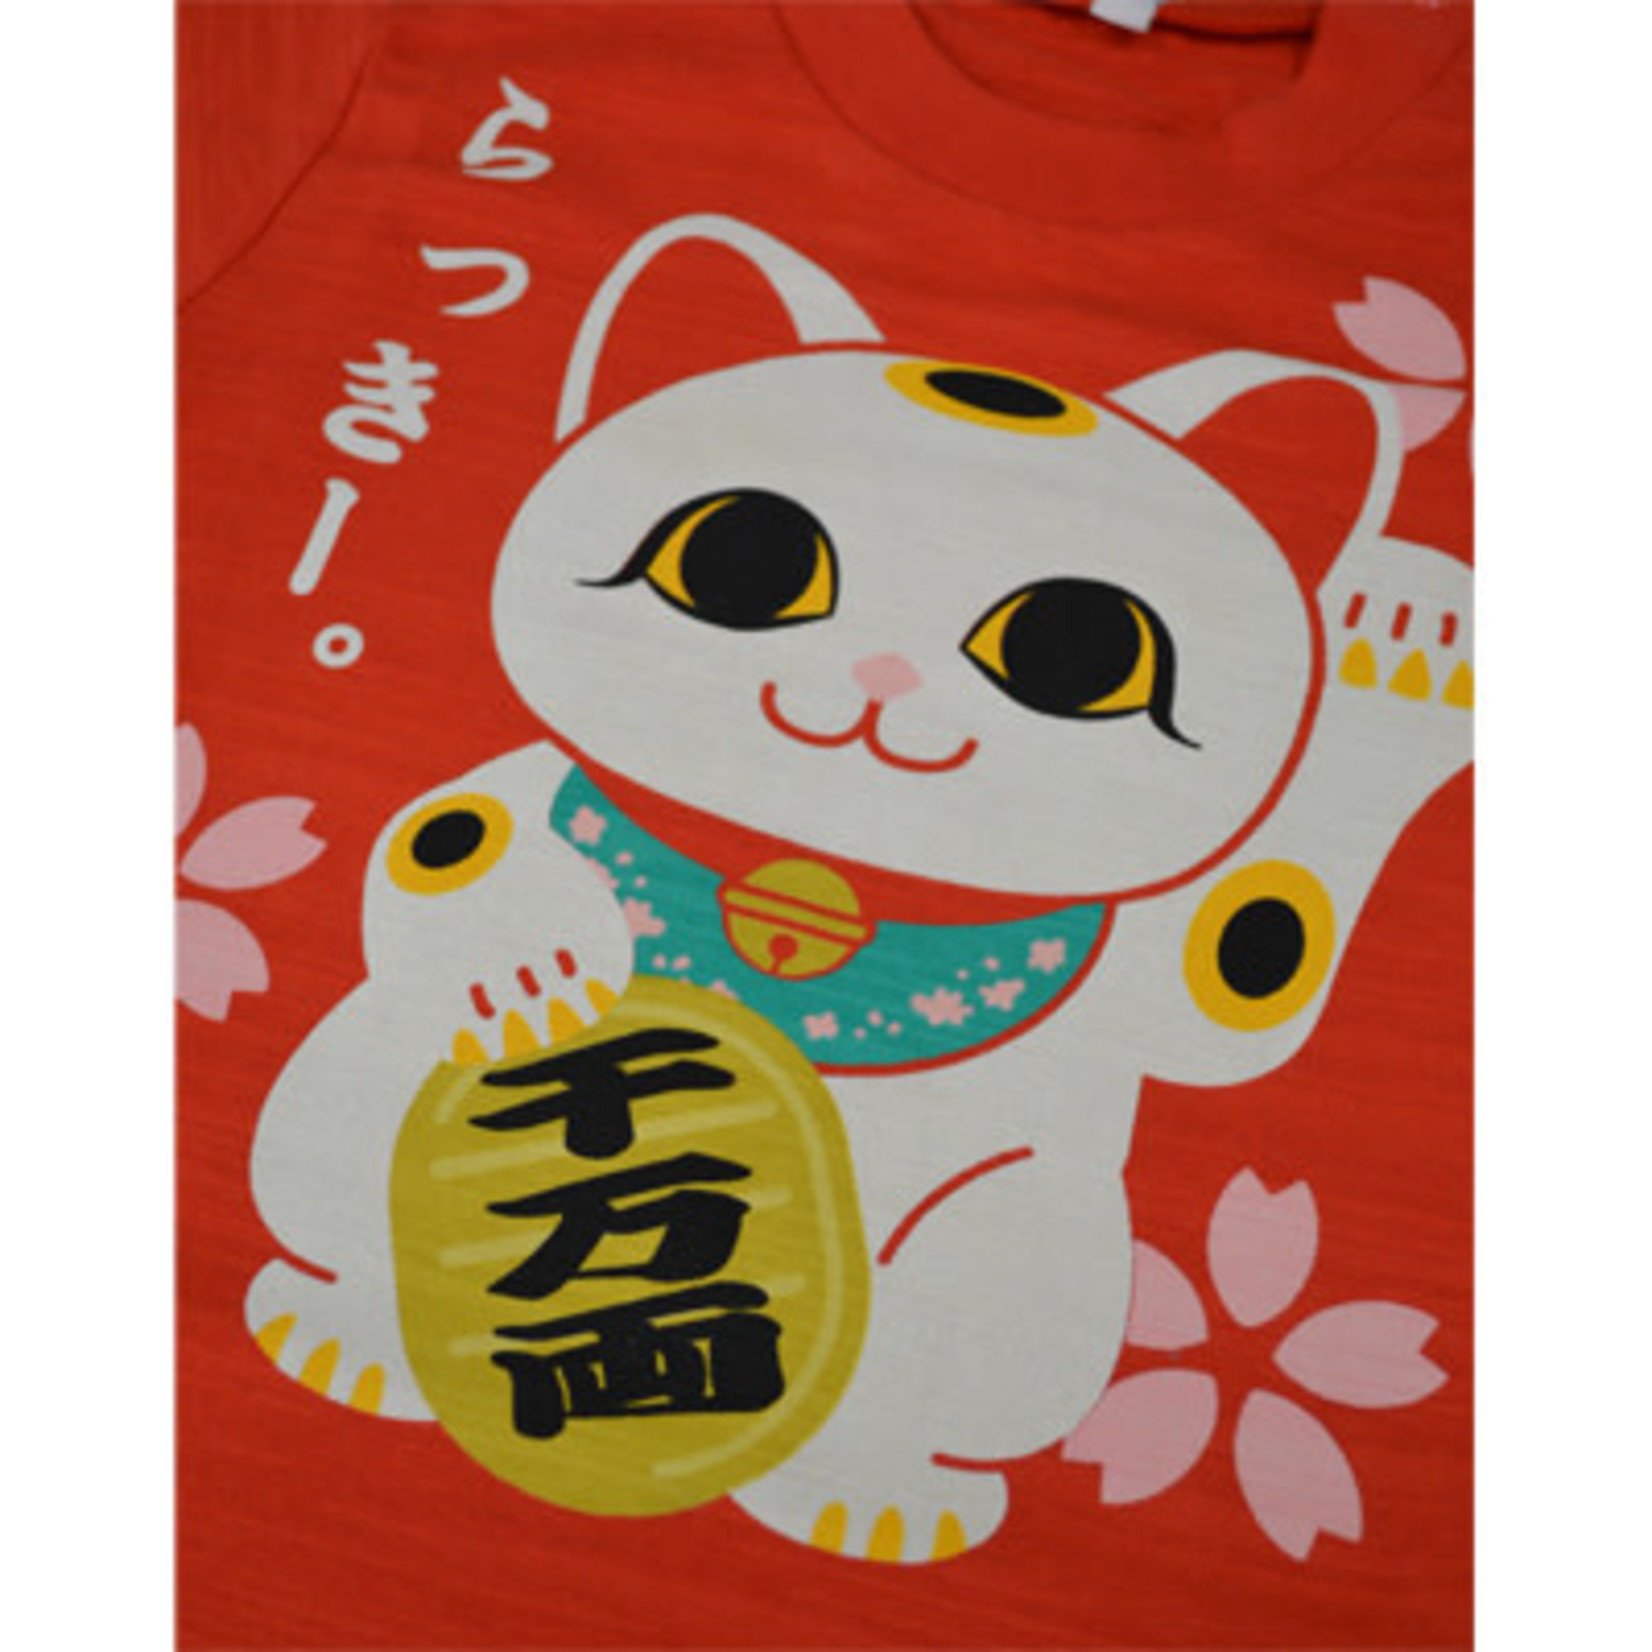 T-Shirt - Kids - Maneki Neko Y6-0015